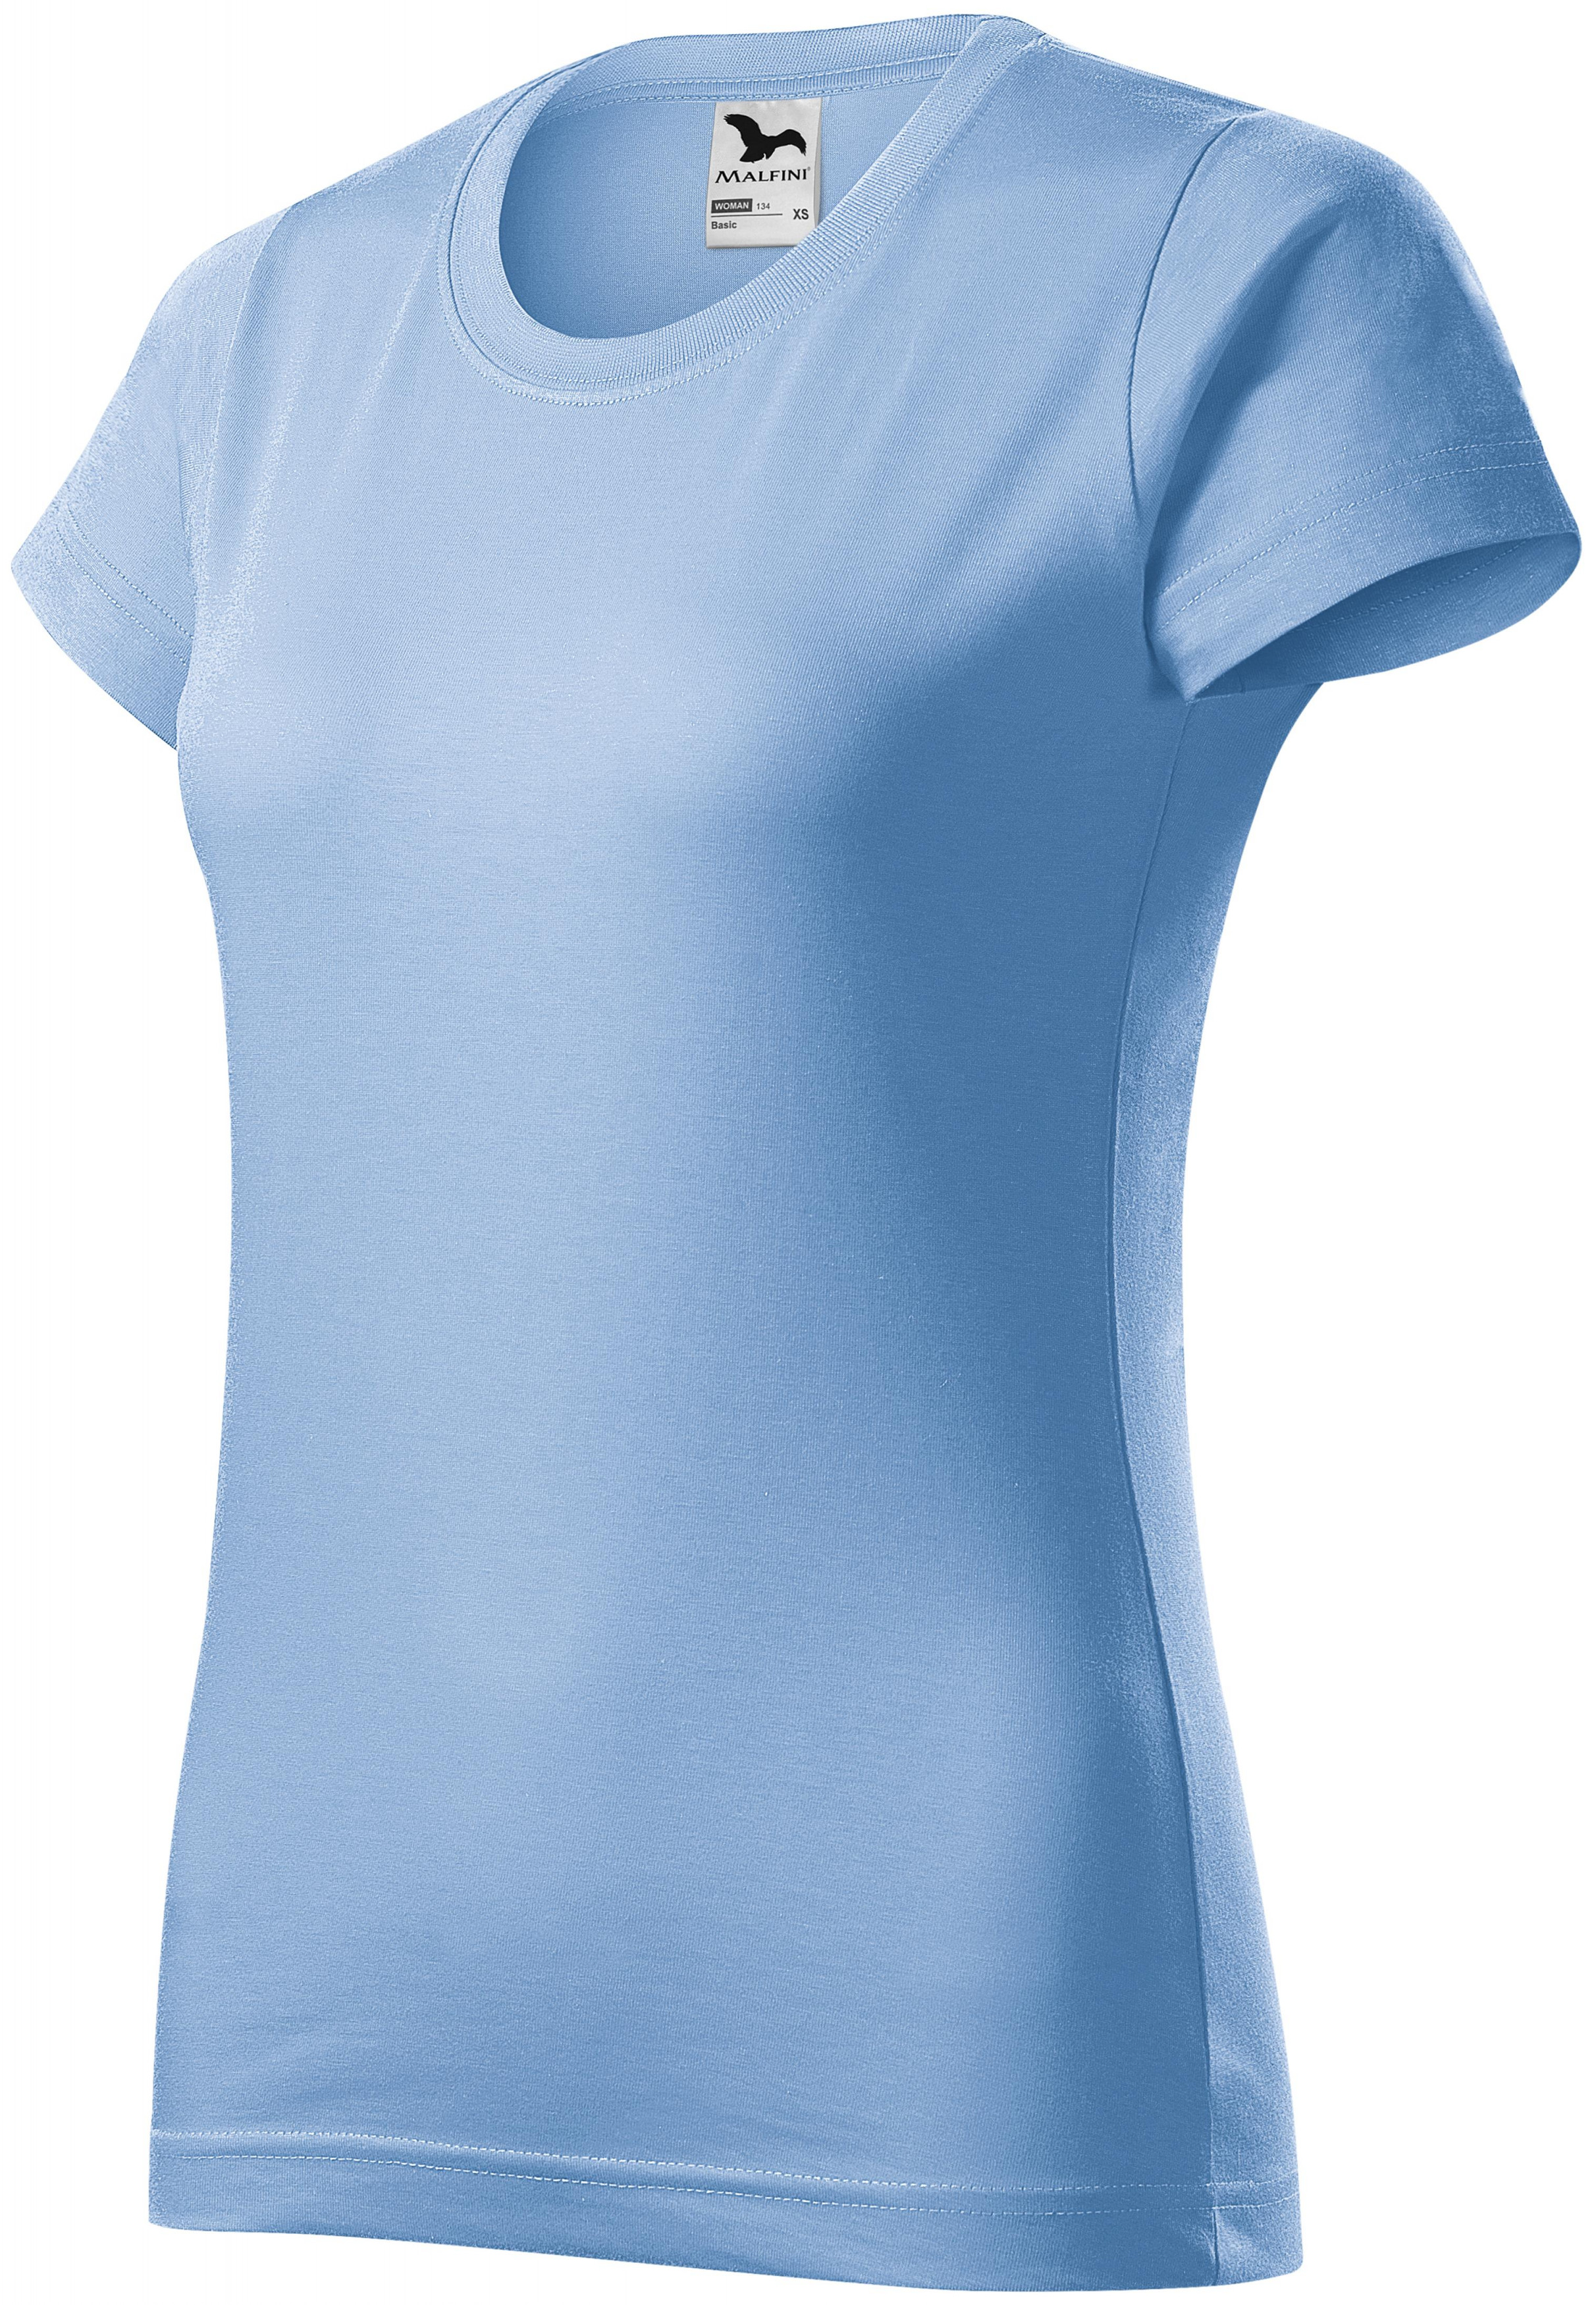 Dámske tričko jednoduché, nebeská modrá, XL